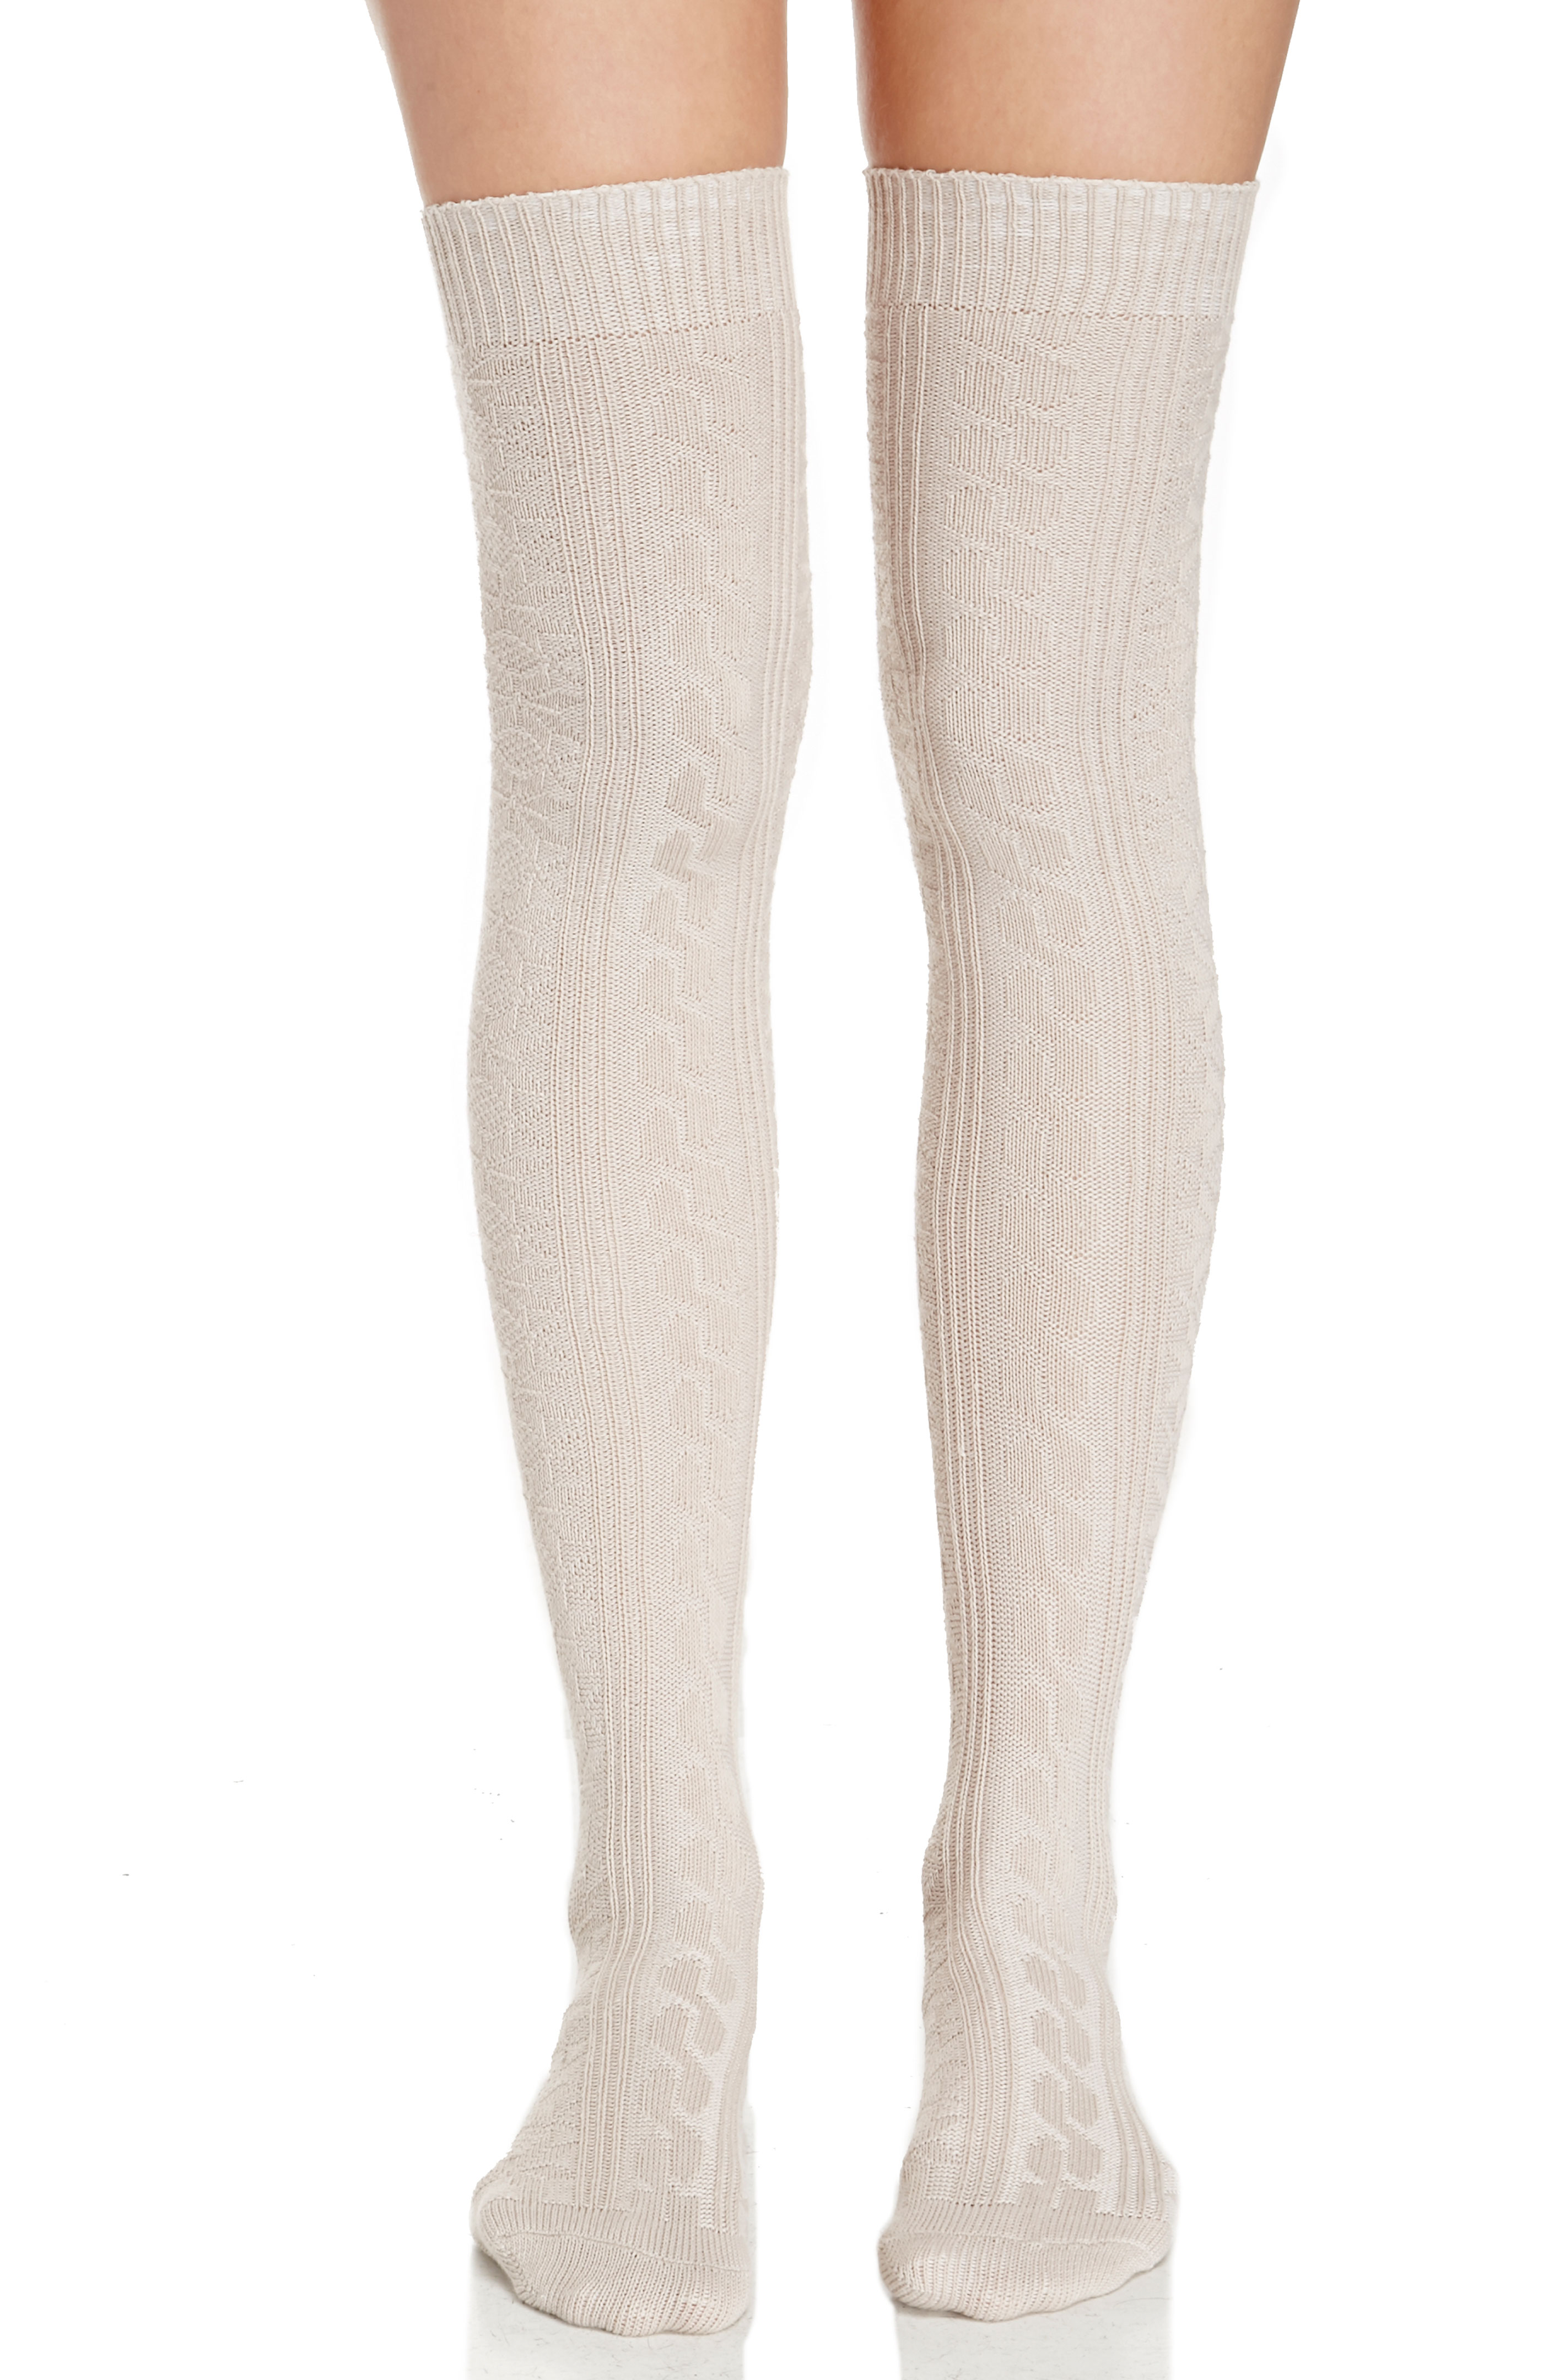 Knit Knee High Socks in Beige | DAILYLOOK